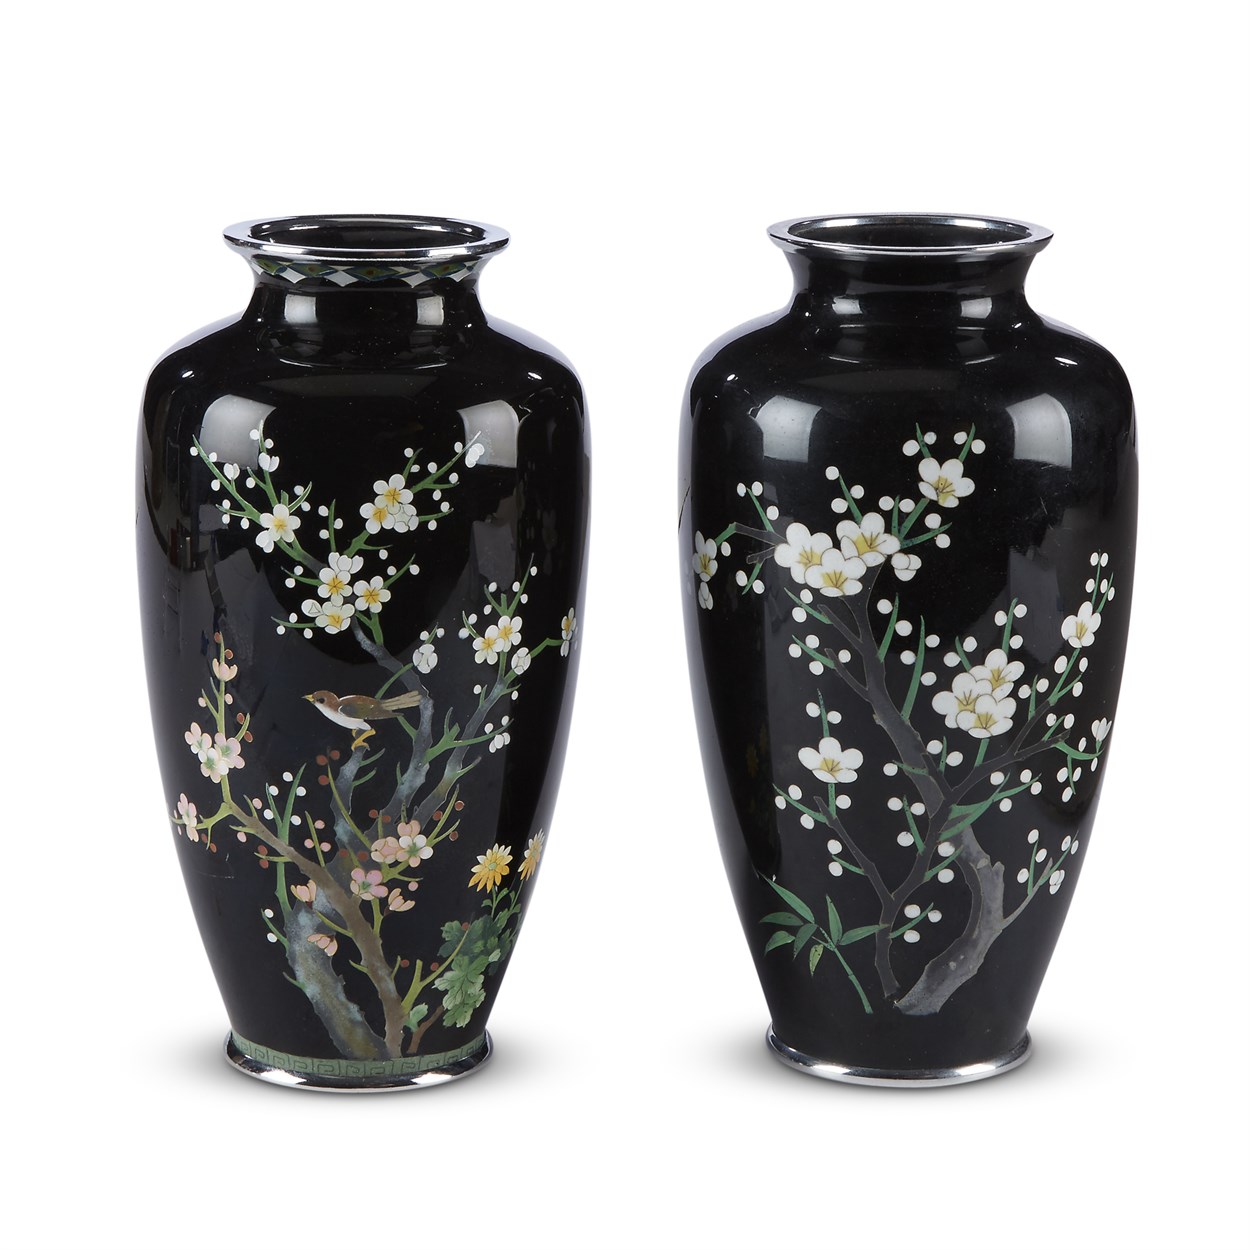 Lot 81 - Two similar Japanese cloisonne black-ground vases, Inaba, Kyoto